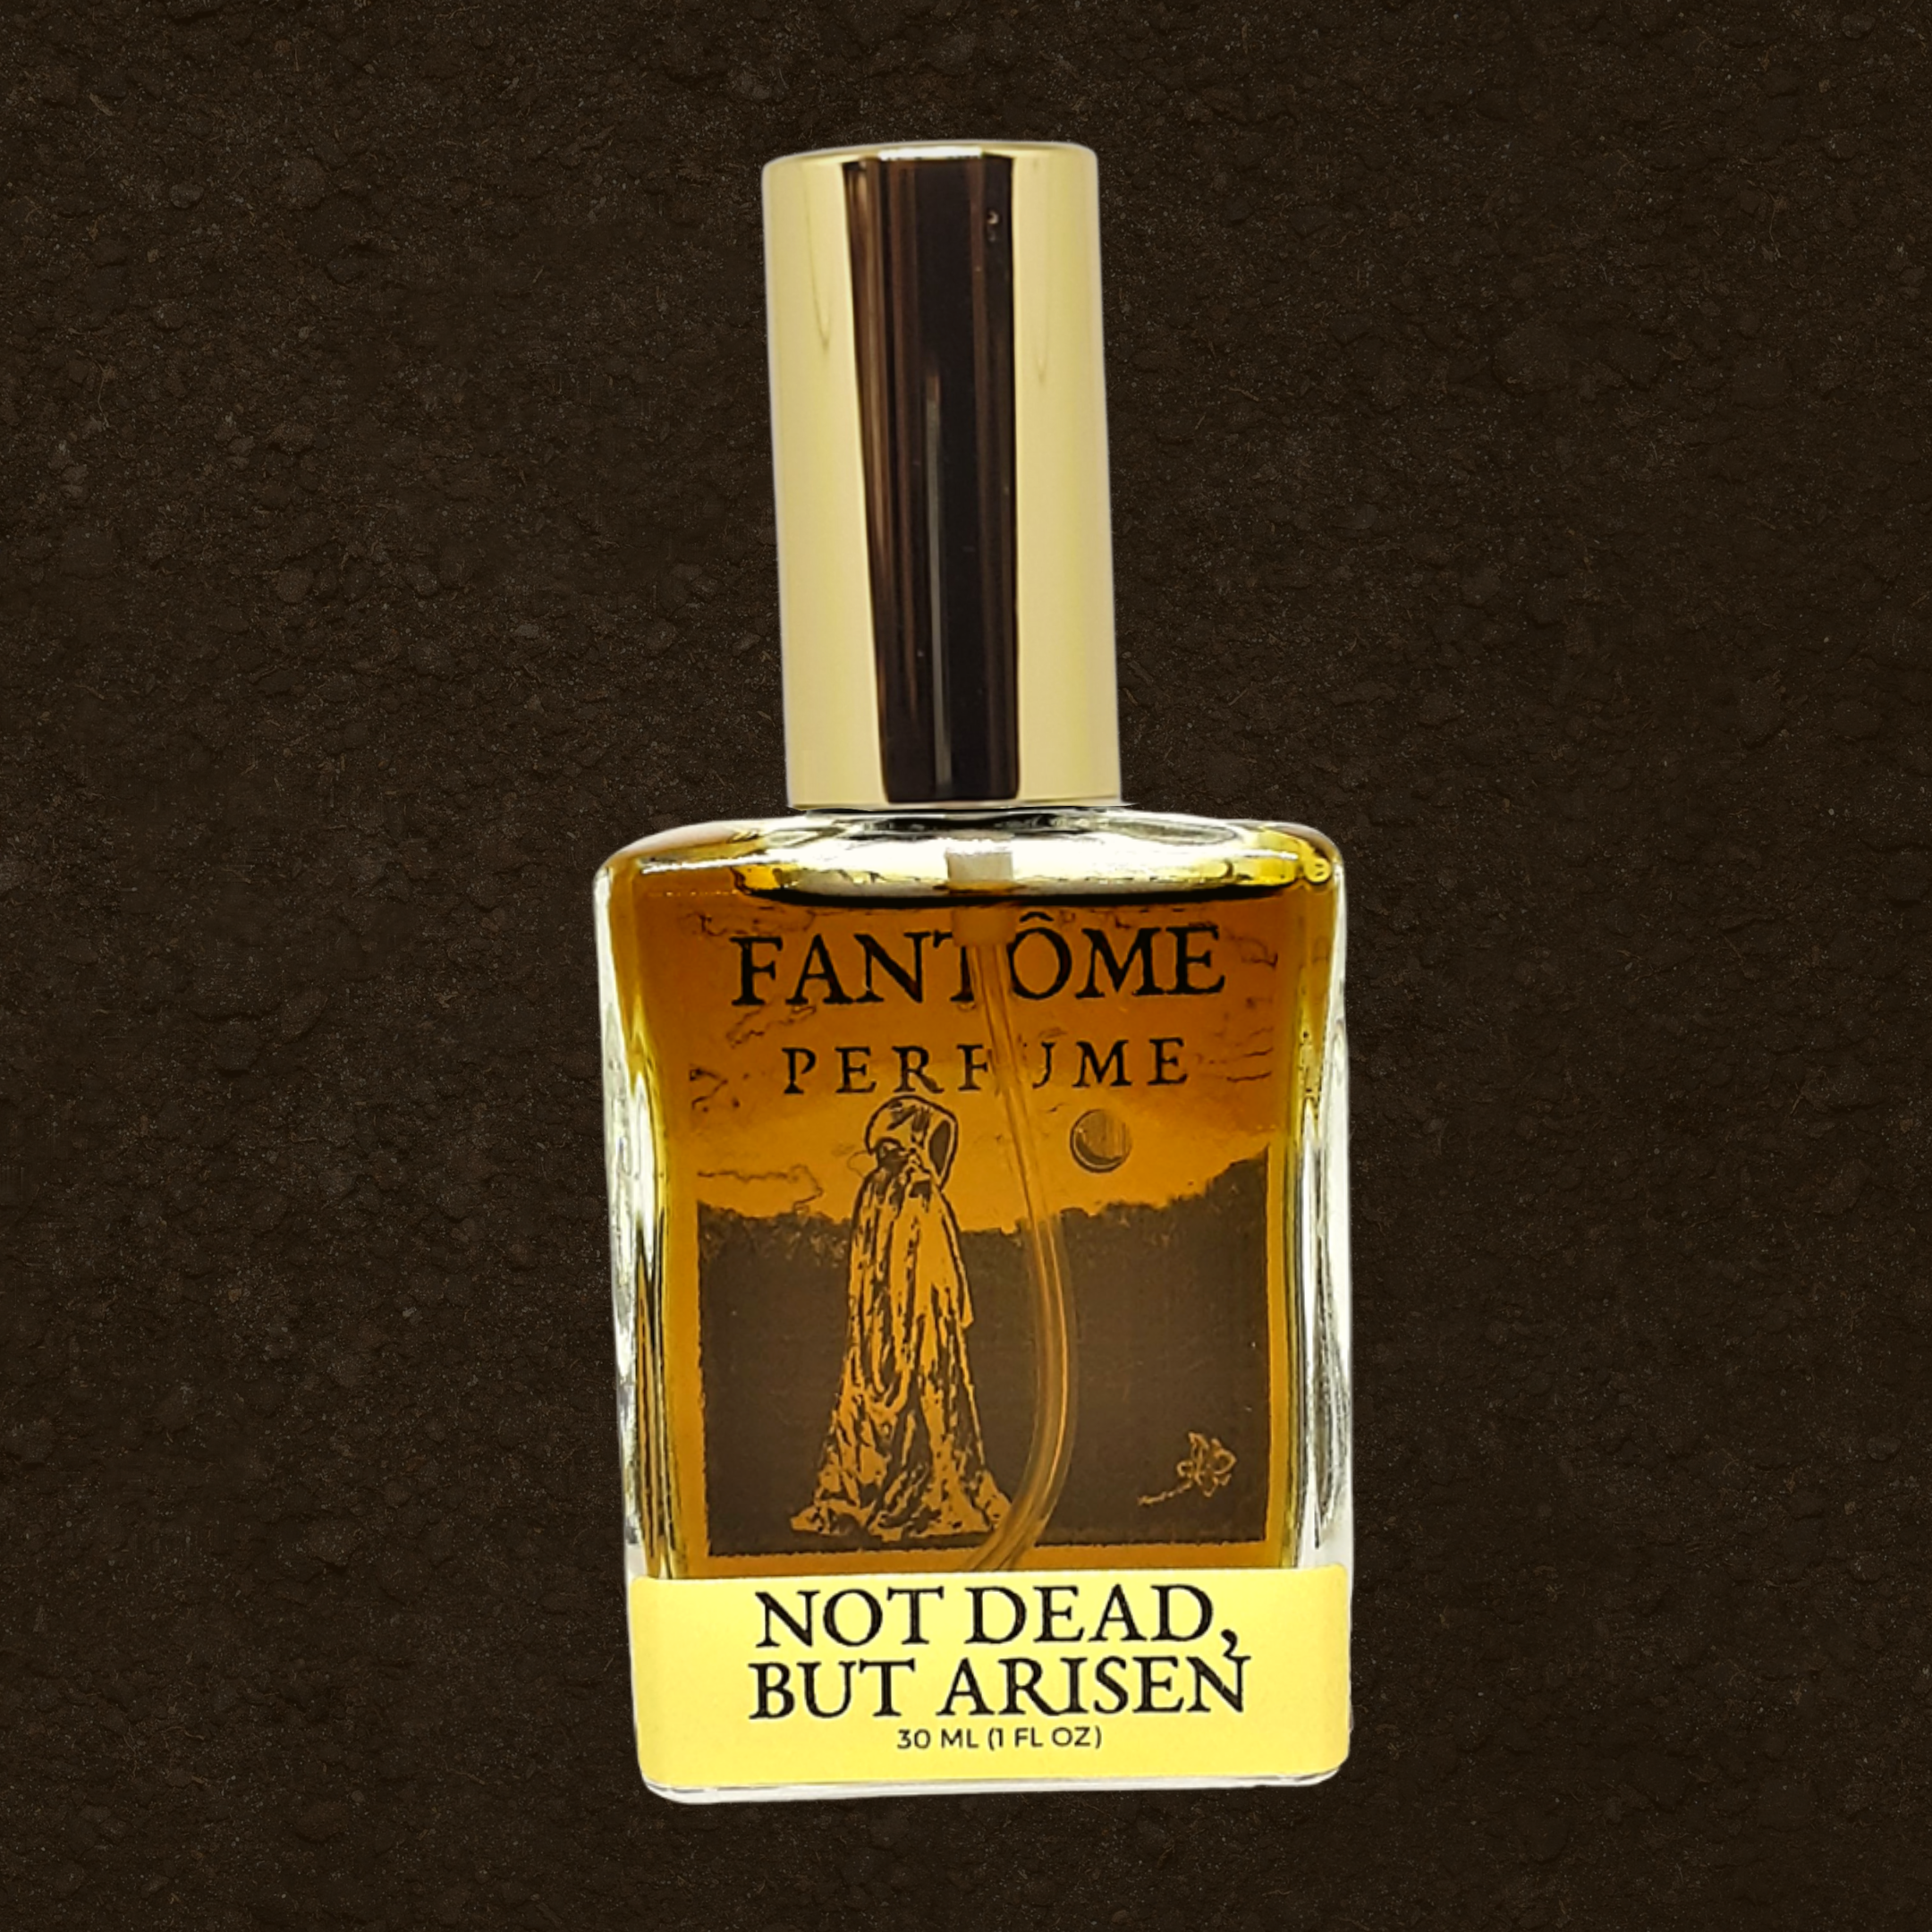 Not Dead, but Arisen Extrait de Parfum